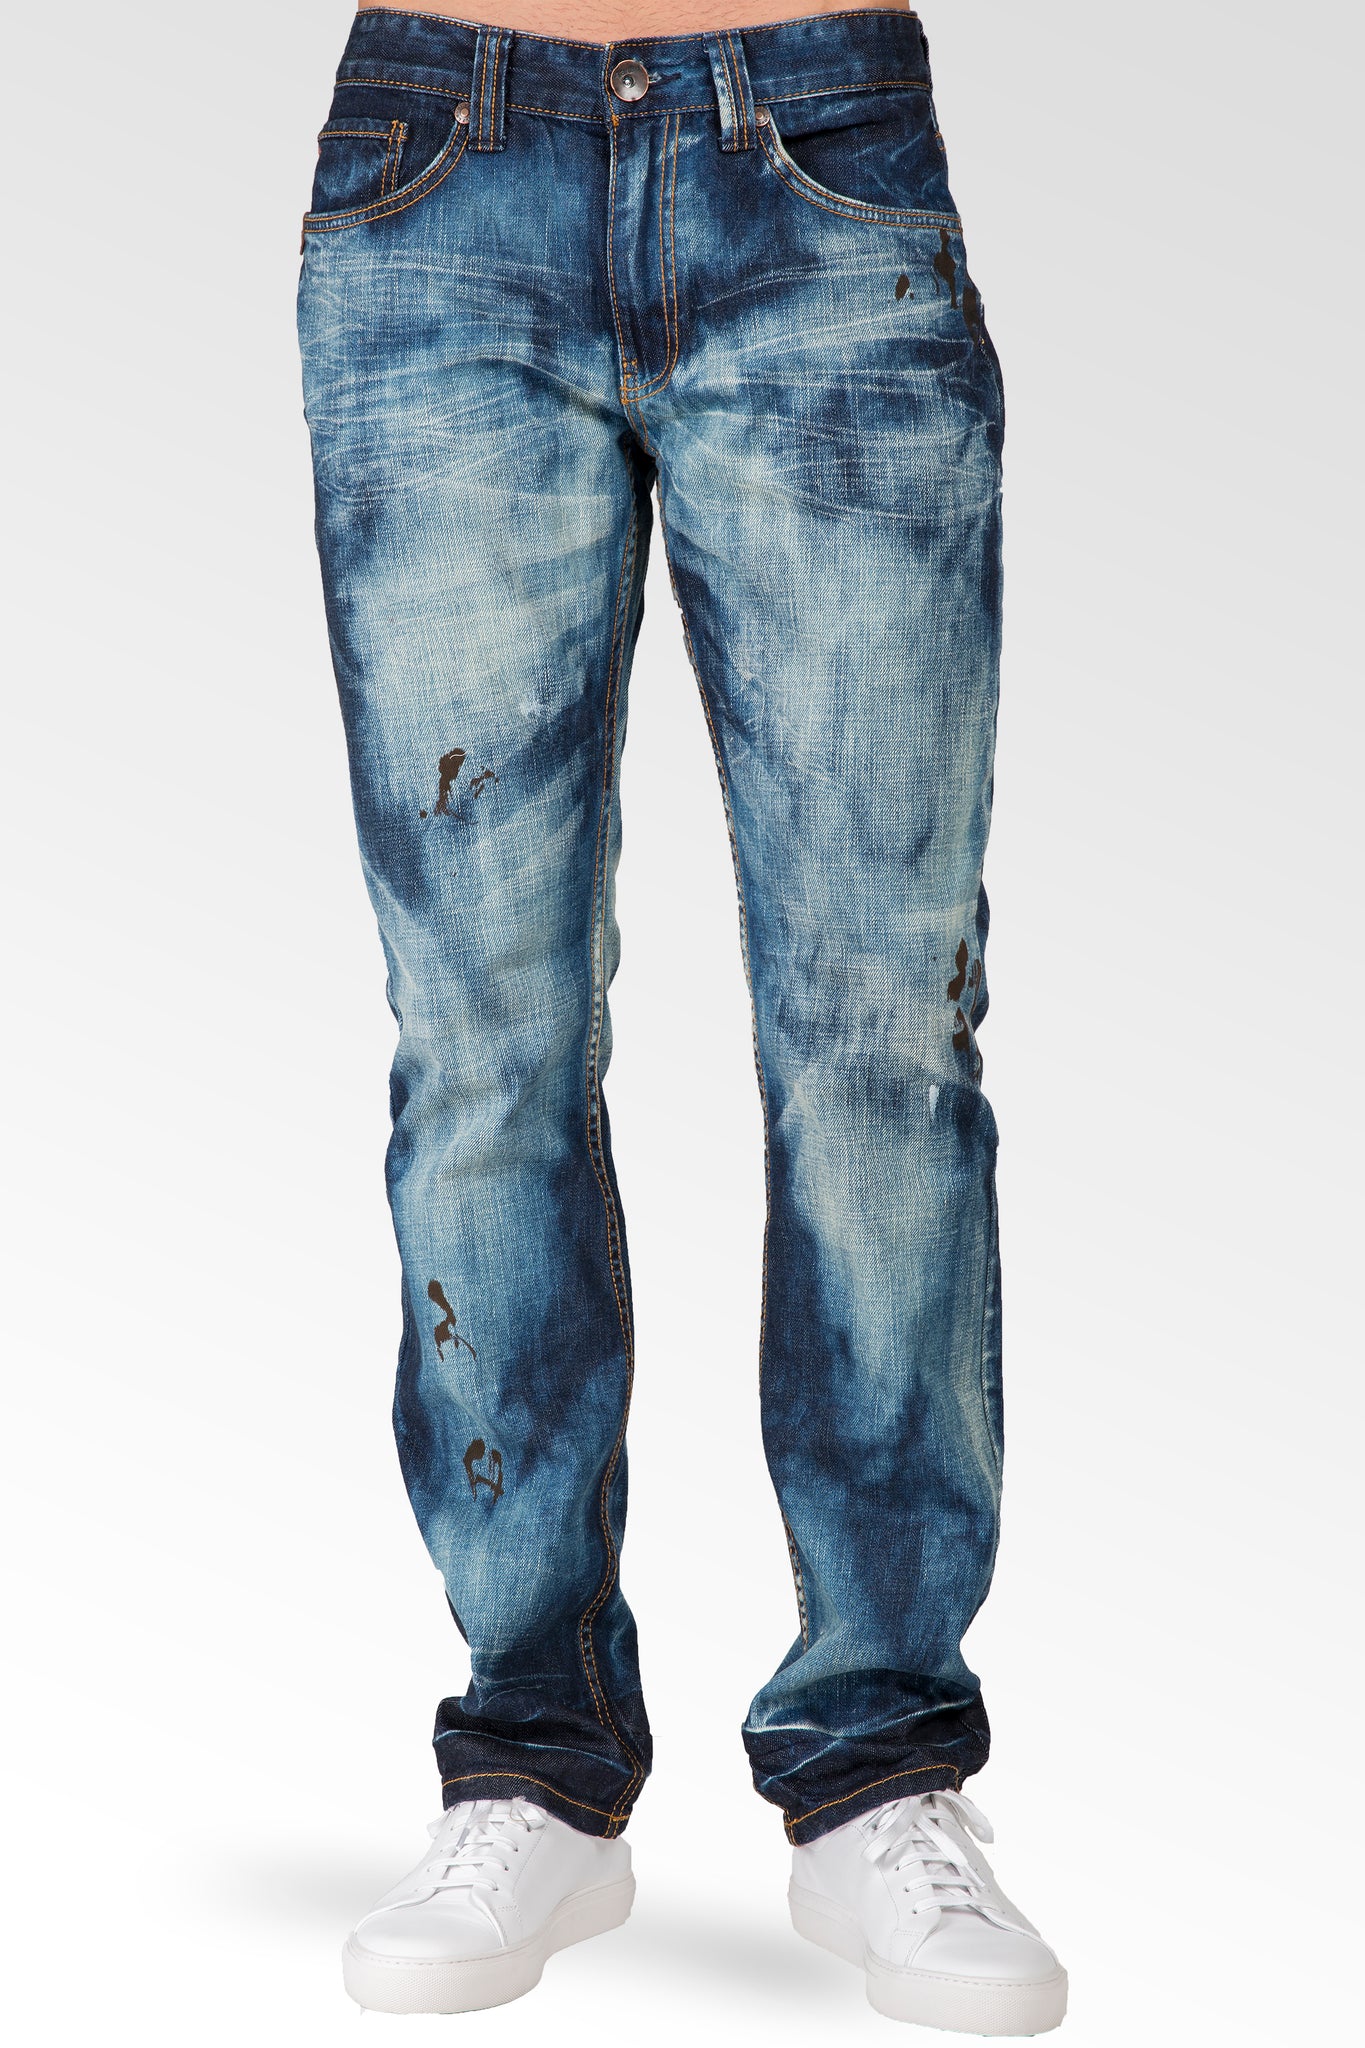 Slim Straight Dark Cloud Blue Premium Denim 5 Pocket Jeans Sanding Whisker Paint Splatter